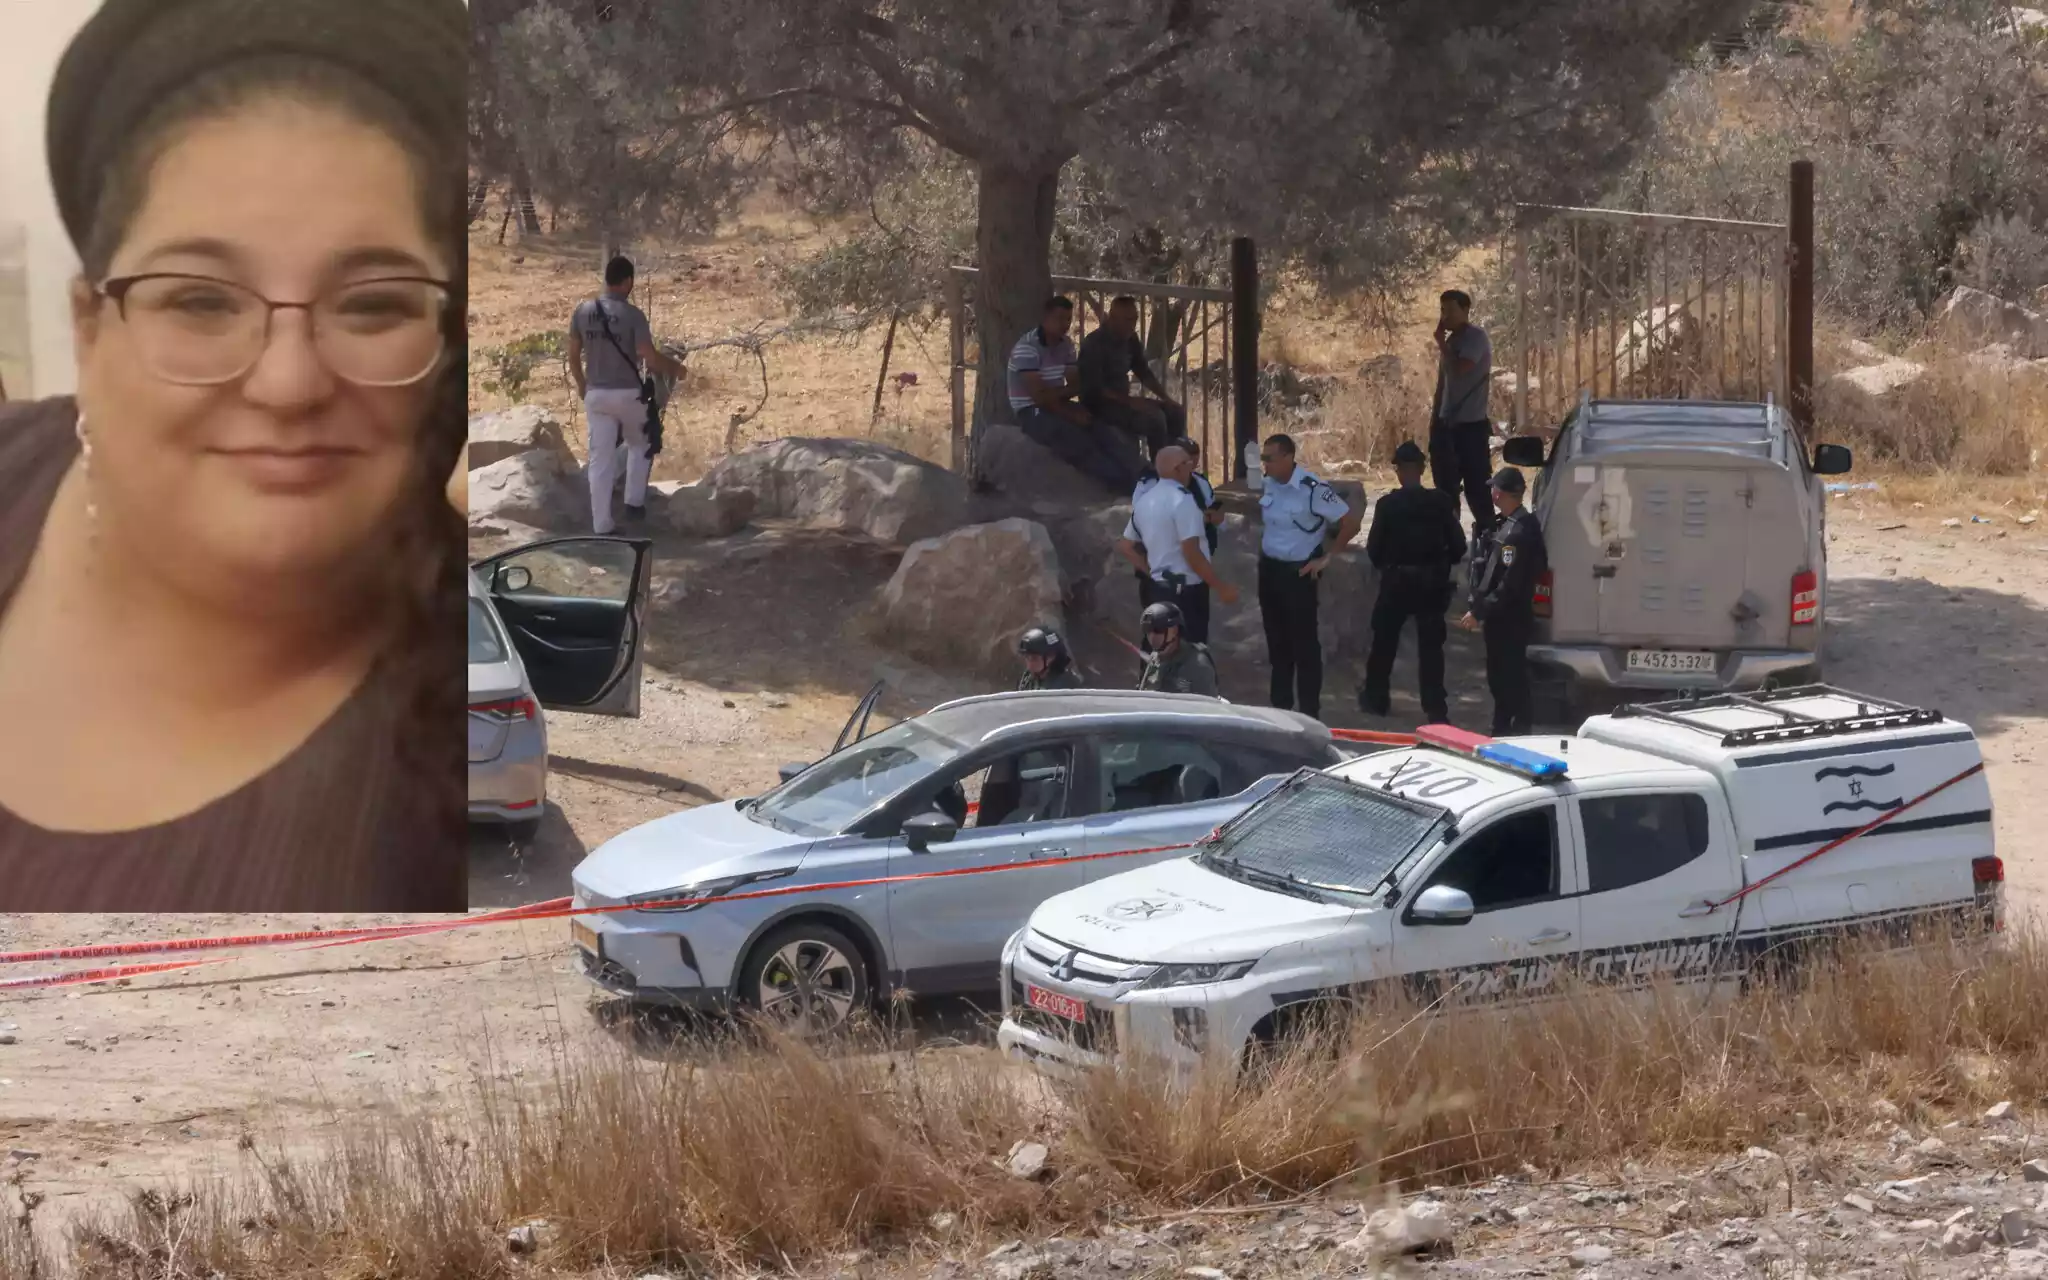 Atentado terrorista en Hebrón: mujer israelí asesinada